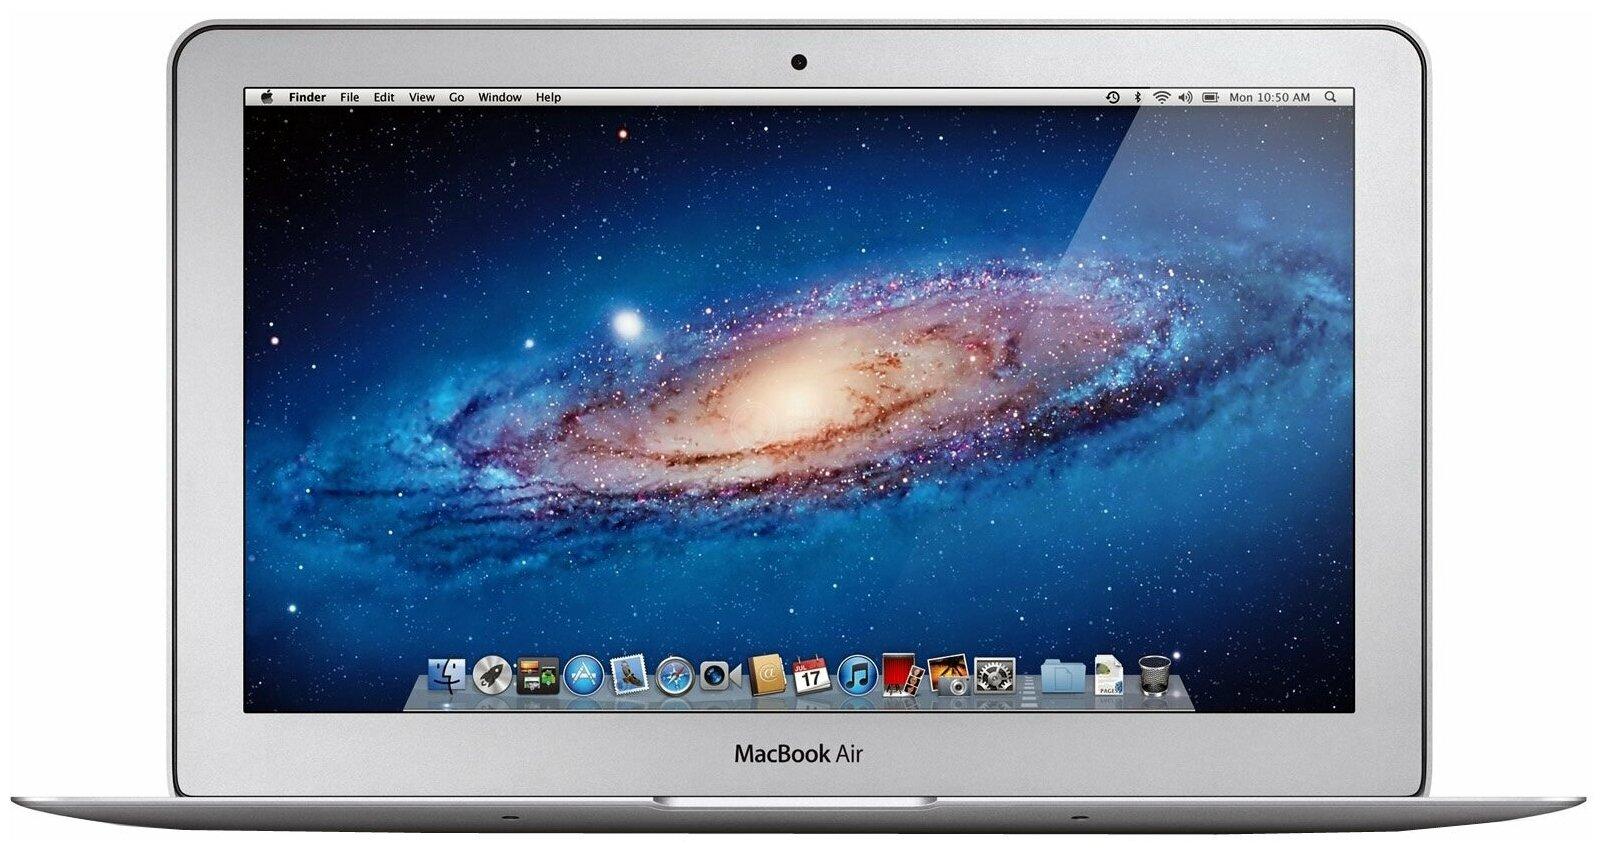 MacBook Air 11 Mid 2013